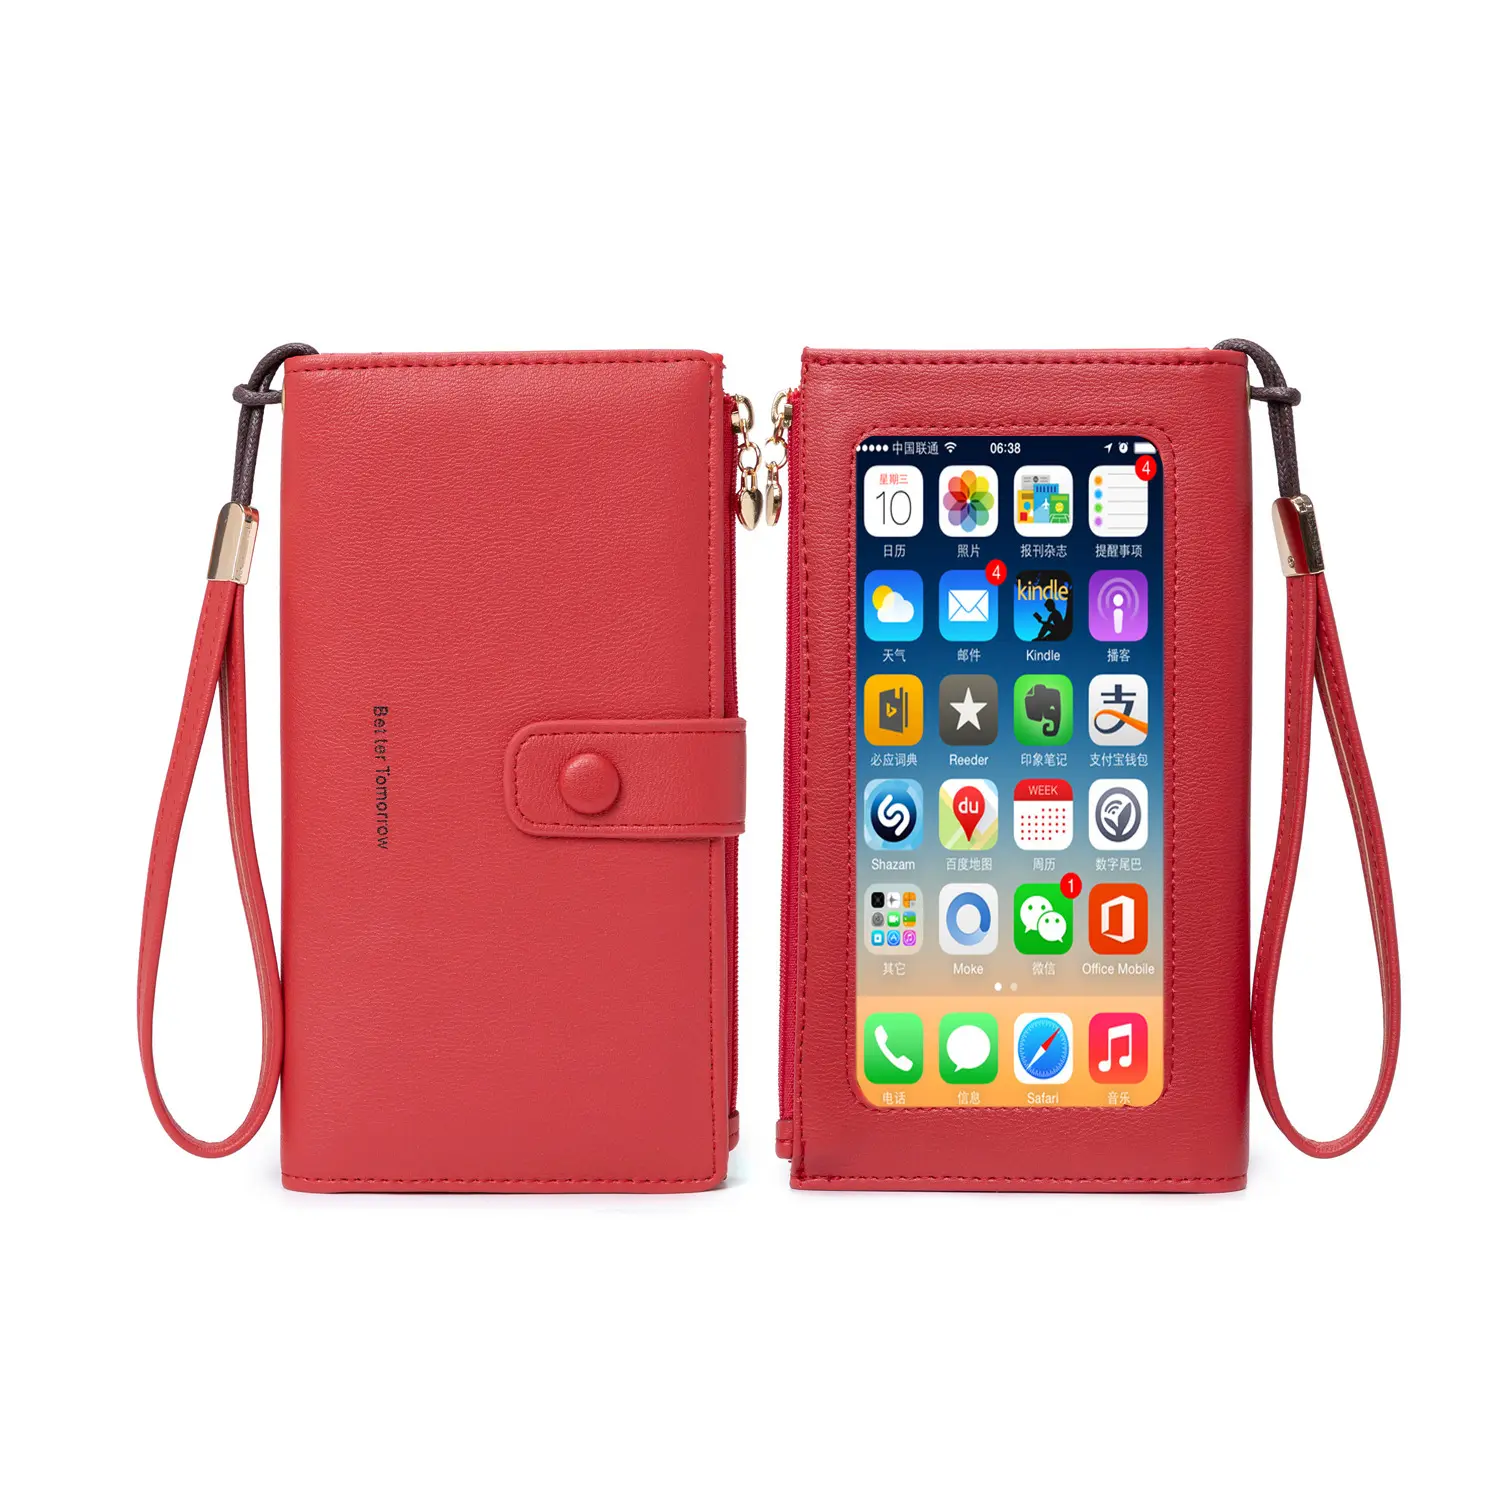 Çok fonksiyonlu çanta entegre cüzdan, kart çantası ve cep telefonu çantası